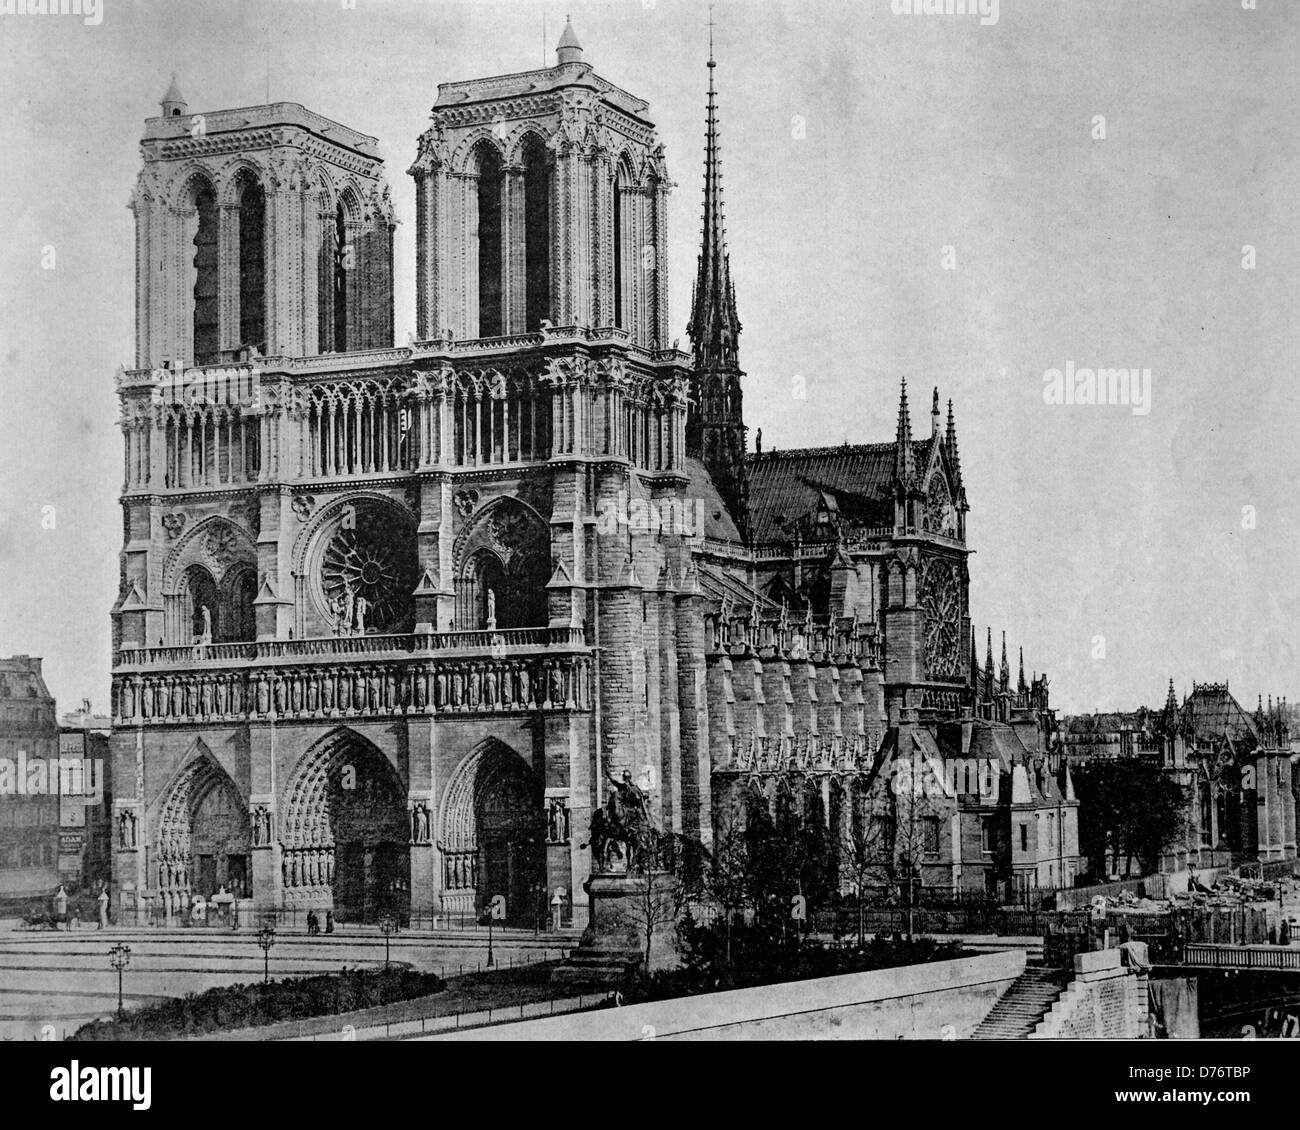 Uno de los primeros autotype fotografías de la catedral de Notre Dame de Paris, Frankreich, circa 1880 Foto de stock